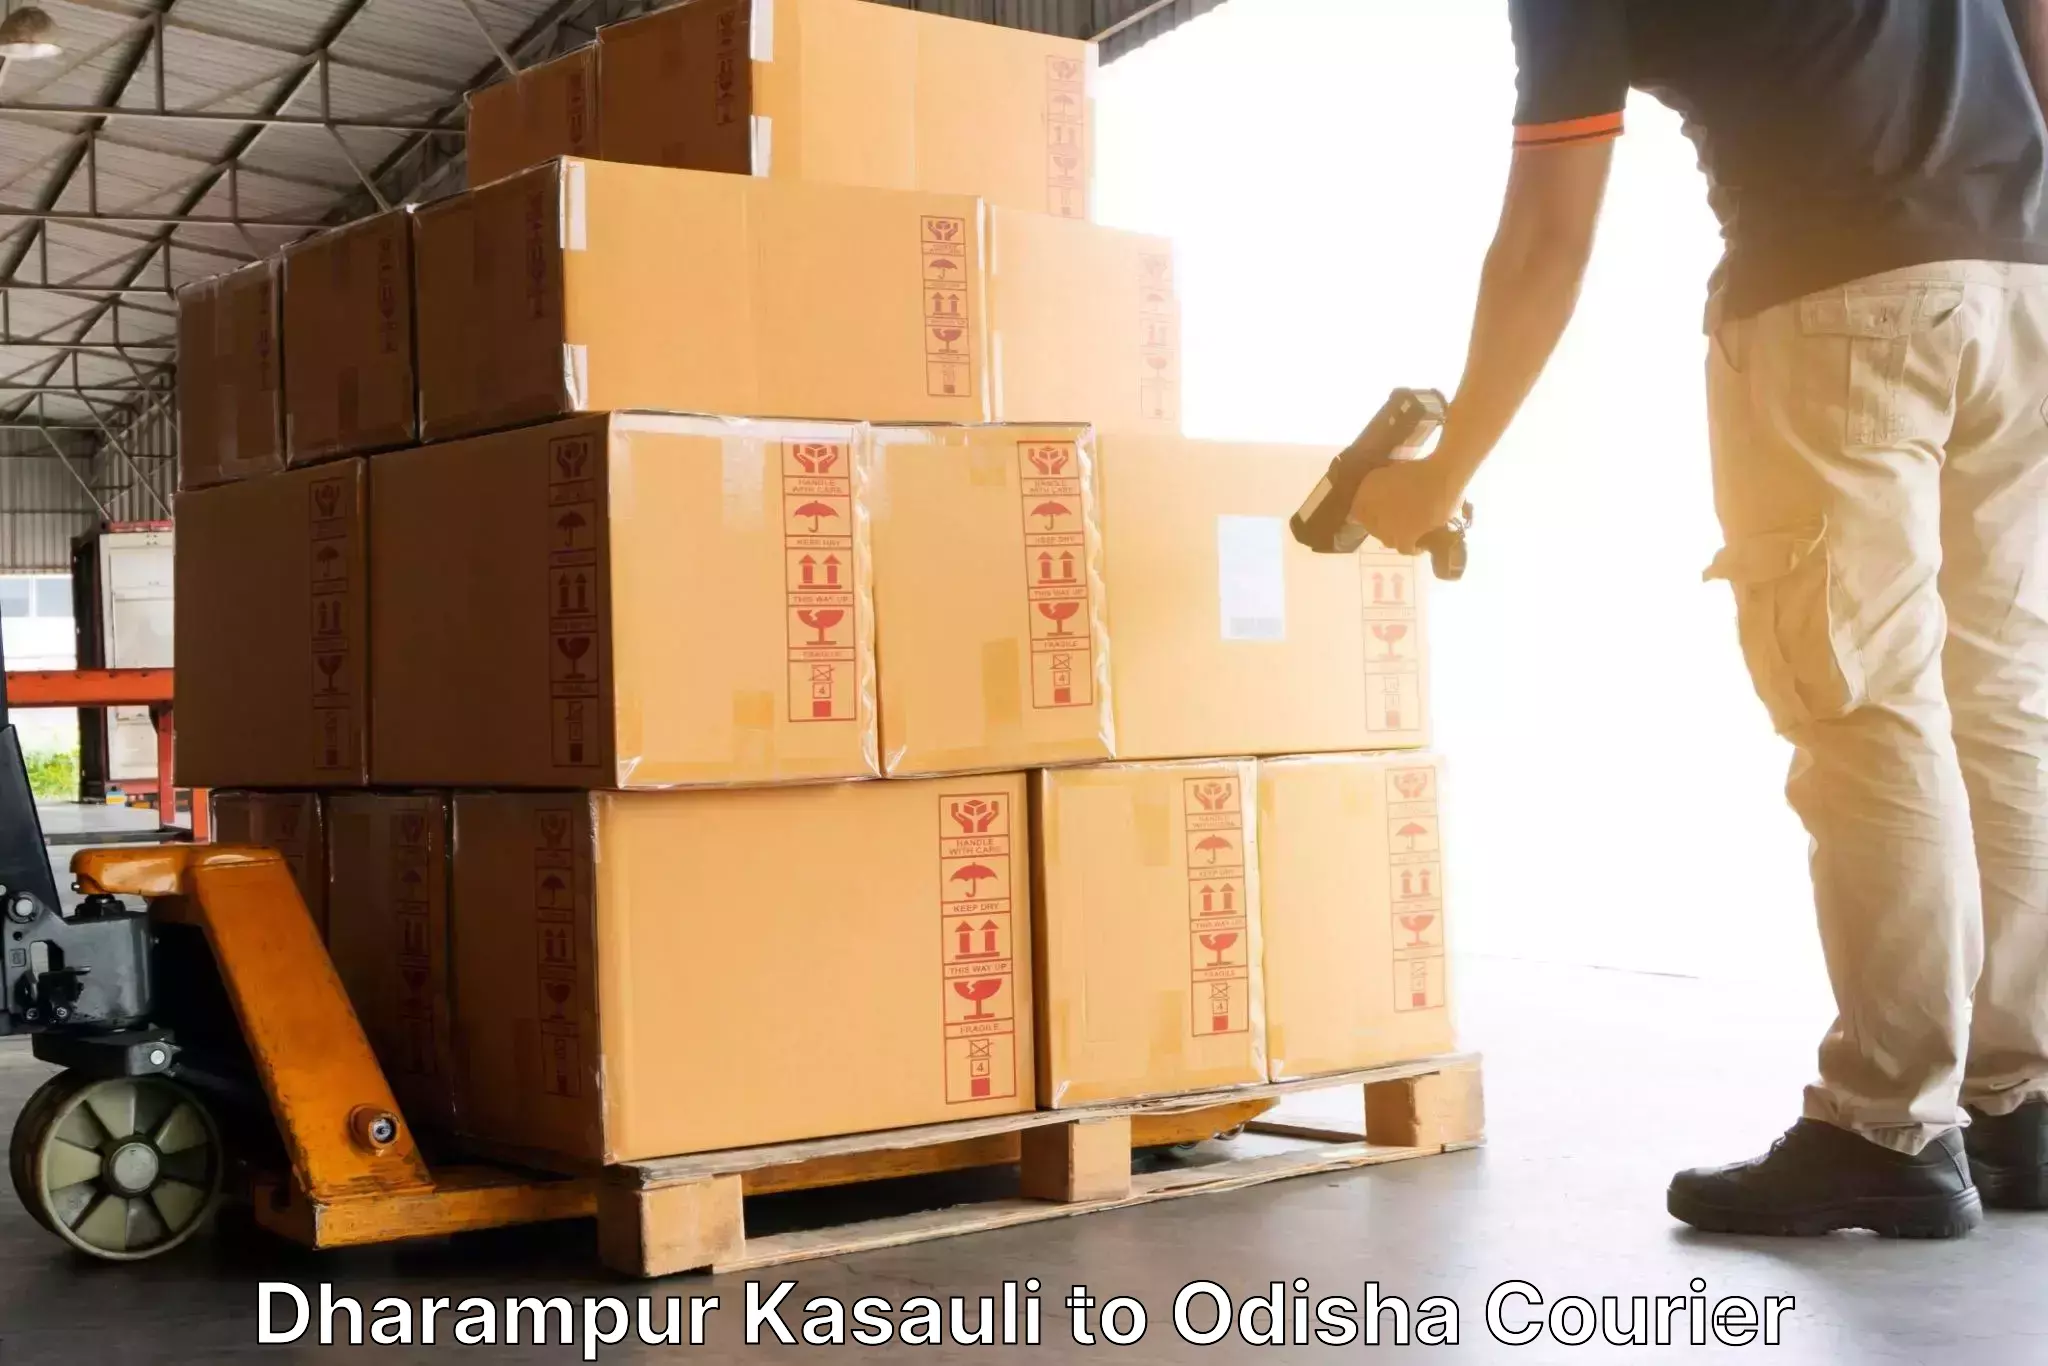 Regular parcel service Dharampur Kasauli to Boudh